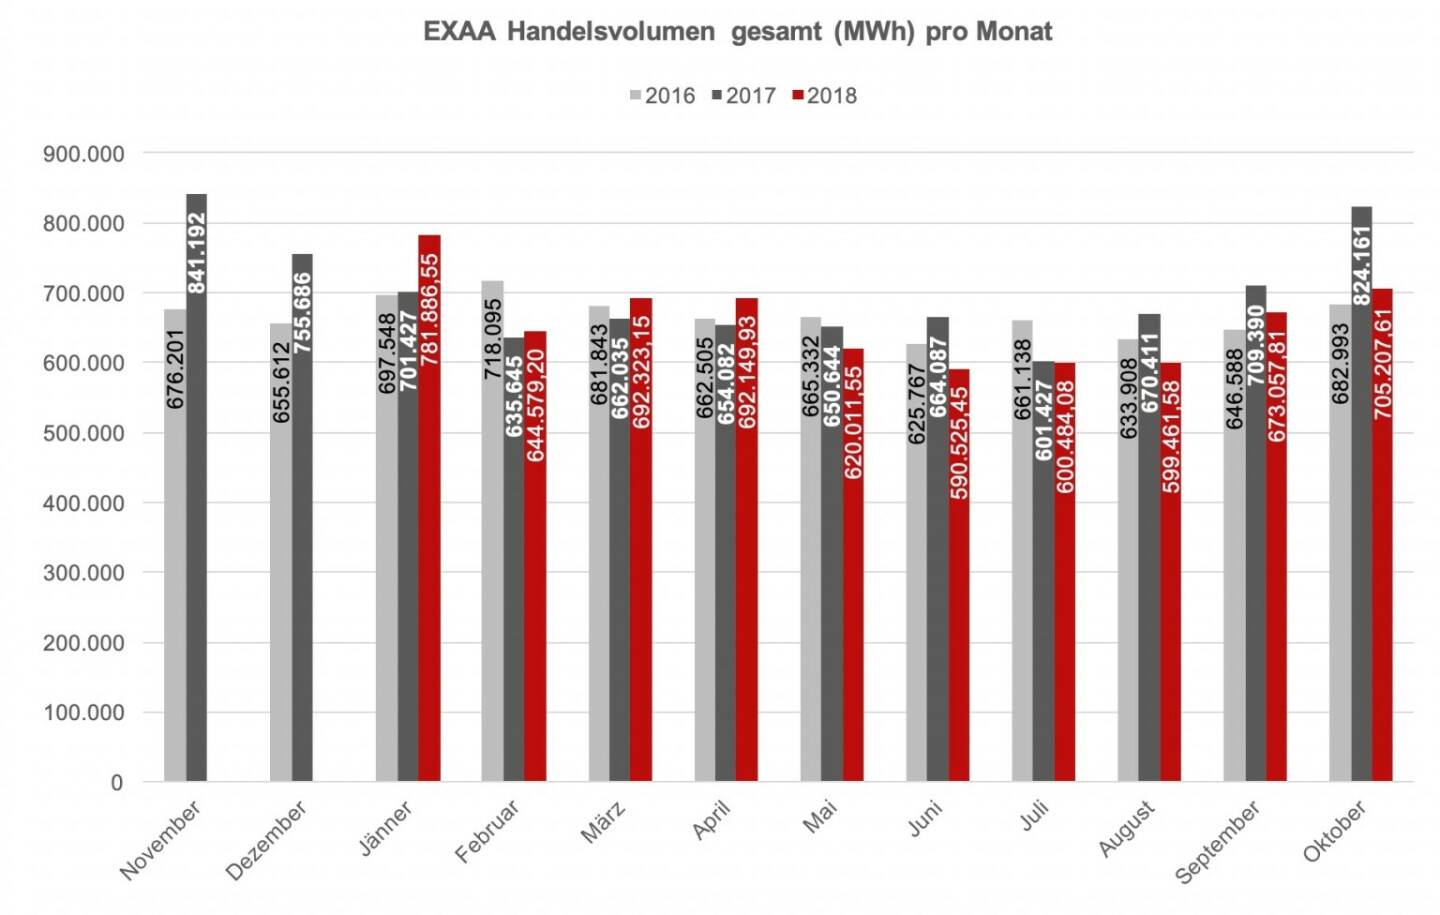 EXAA Handelsvolumen gesamt (MWh) pro Monat: Betrachtet man den österreichischen und deutschen Markt getrennt, so konnte im österreichischen Liefergebiet ein Volumen von 233.401,5 MWh und im deutschen Liefergebiet ein Volumen von 471.806,3 MWh erzielt werden. Somit wurden 33,1 % des Gesamtvolumens im österreichischen Liefergebiet auktioniert.
Die Preise betrugen im Oktober 2018 im Monatsmittel im österreichischen Marktgebiet für das Baseprodukt (00-24 Uhr) 62,37 EUR/MWh und für das Peakprodukt (08-20 Uhr) 70,07 EUR/MWh, im deutschen Marktgebiet betrugen die Preise für das Baseprodukt (00-24 Uhr) 53,15 EUR/MWh und für das Peakprodukt (08-20 Uhr) 58,85 EUR/MWh. 

